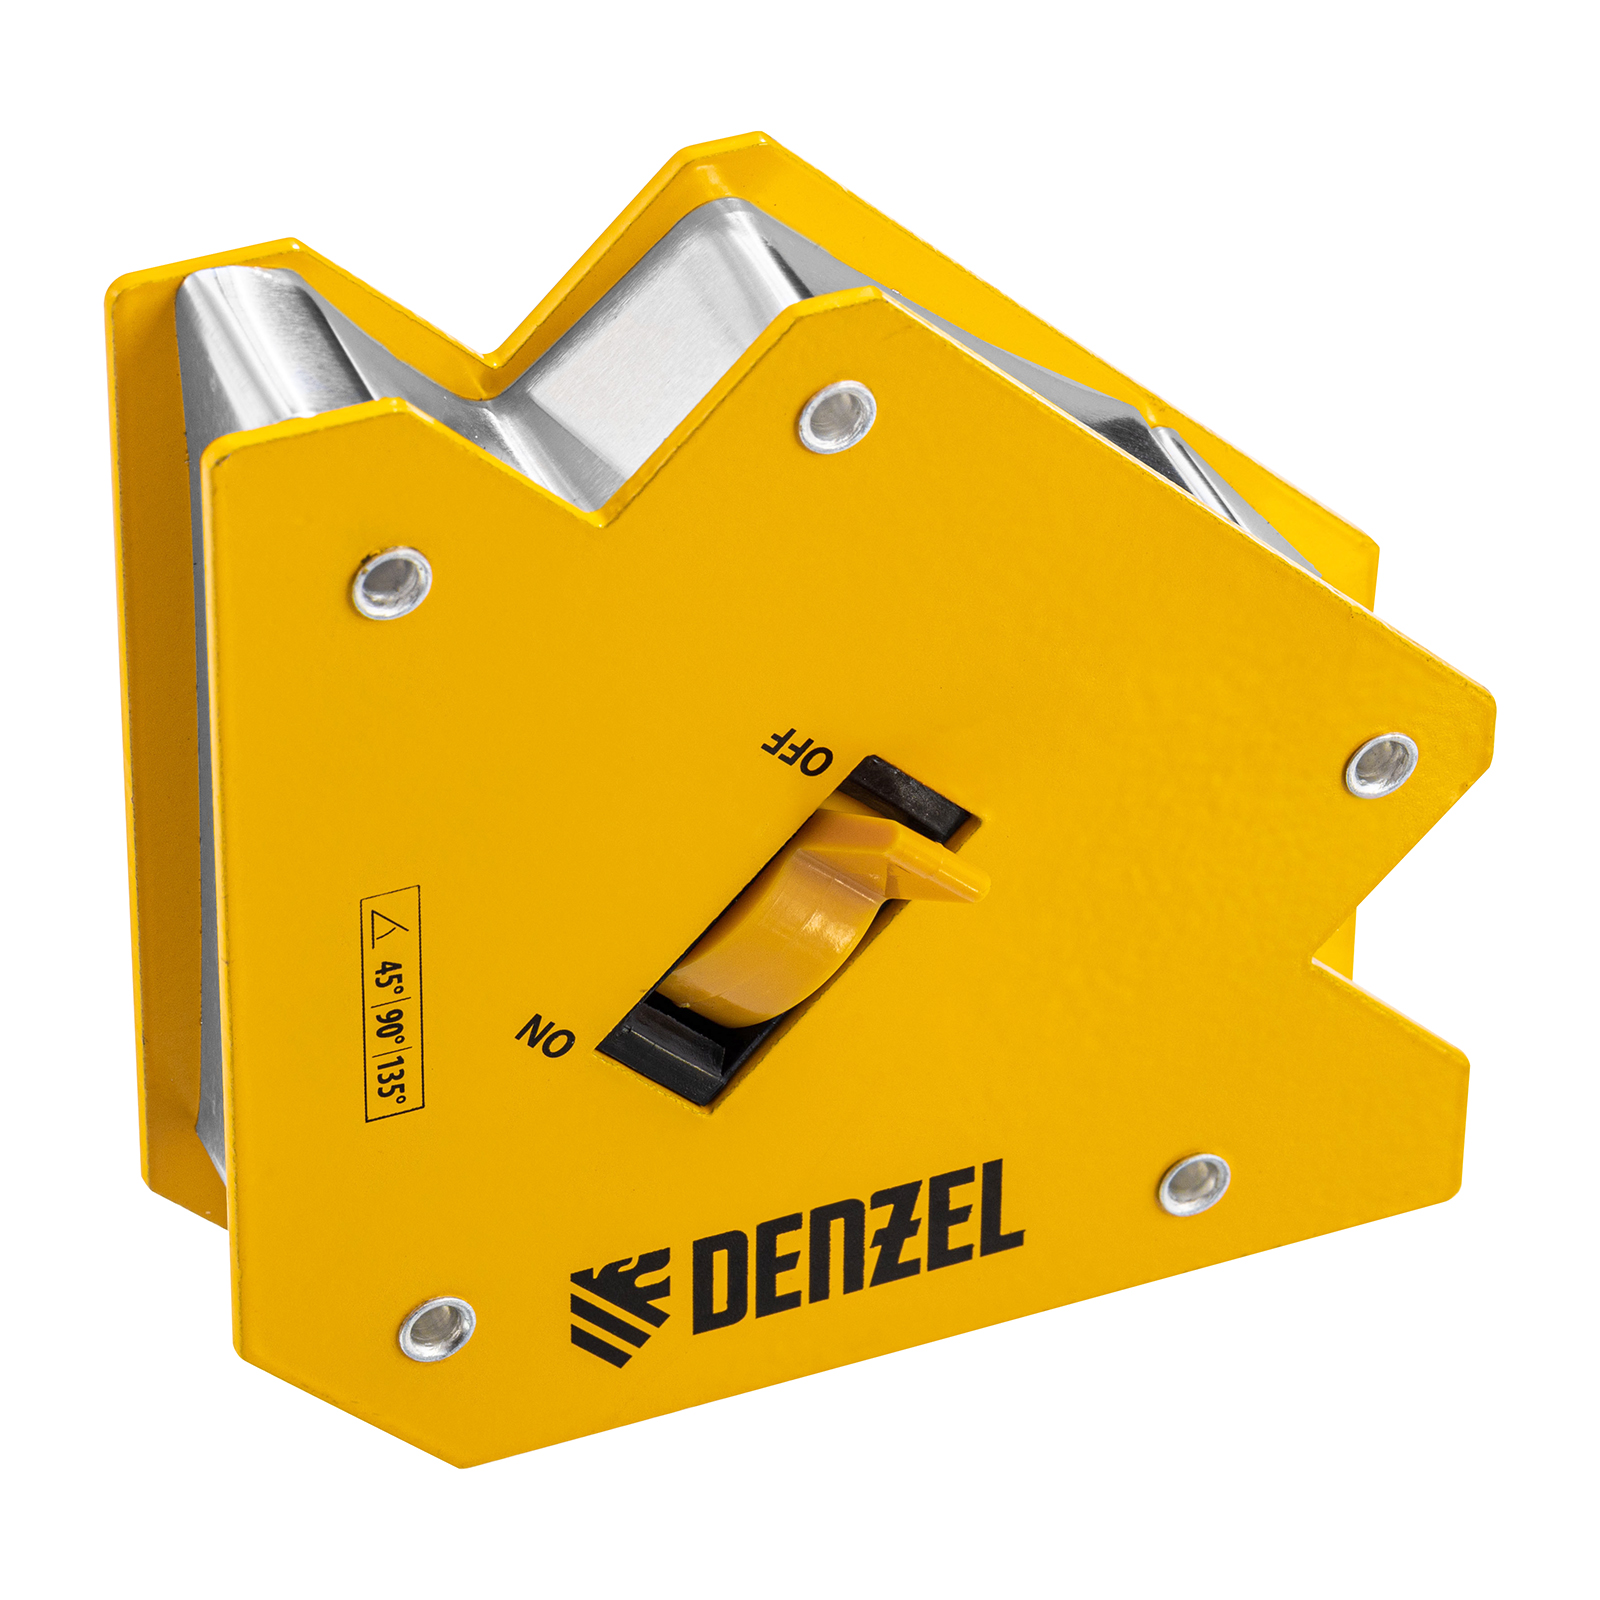 Фиксатор магнитный отключаемый для сварочных работ DENZEL усилие 30 LB, 45х90х135 гр 97563 магнитный фиксатор lishuai